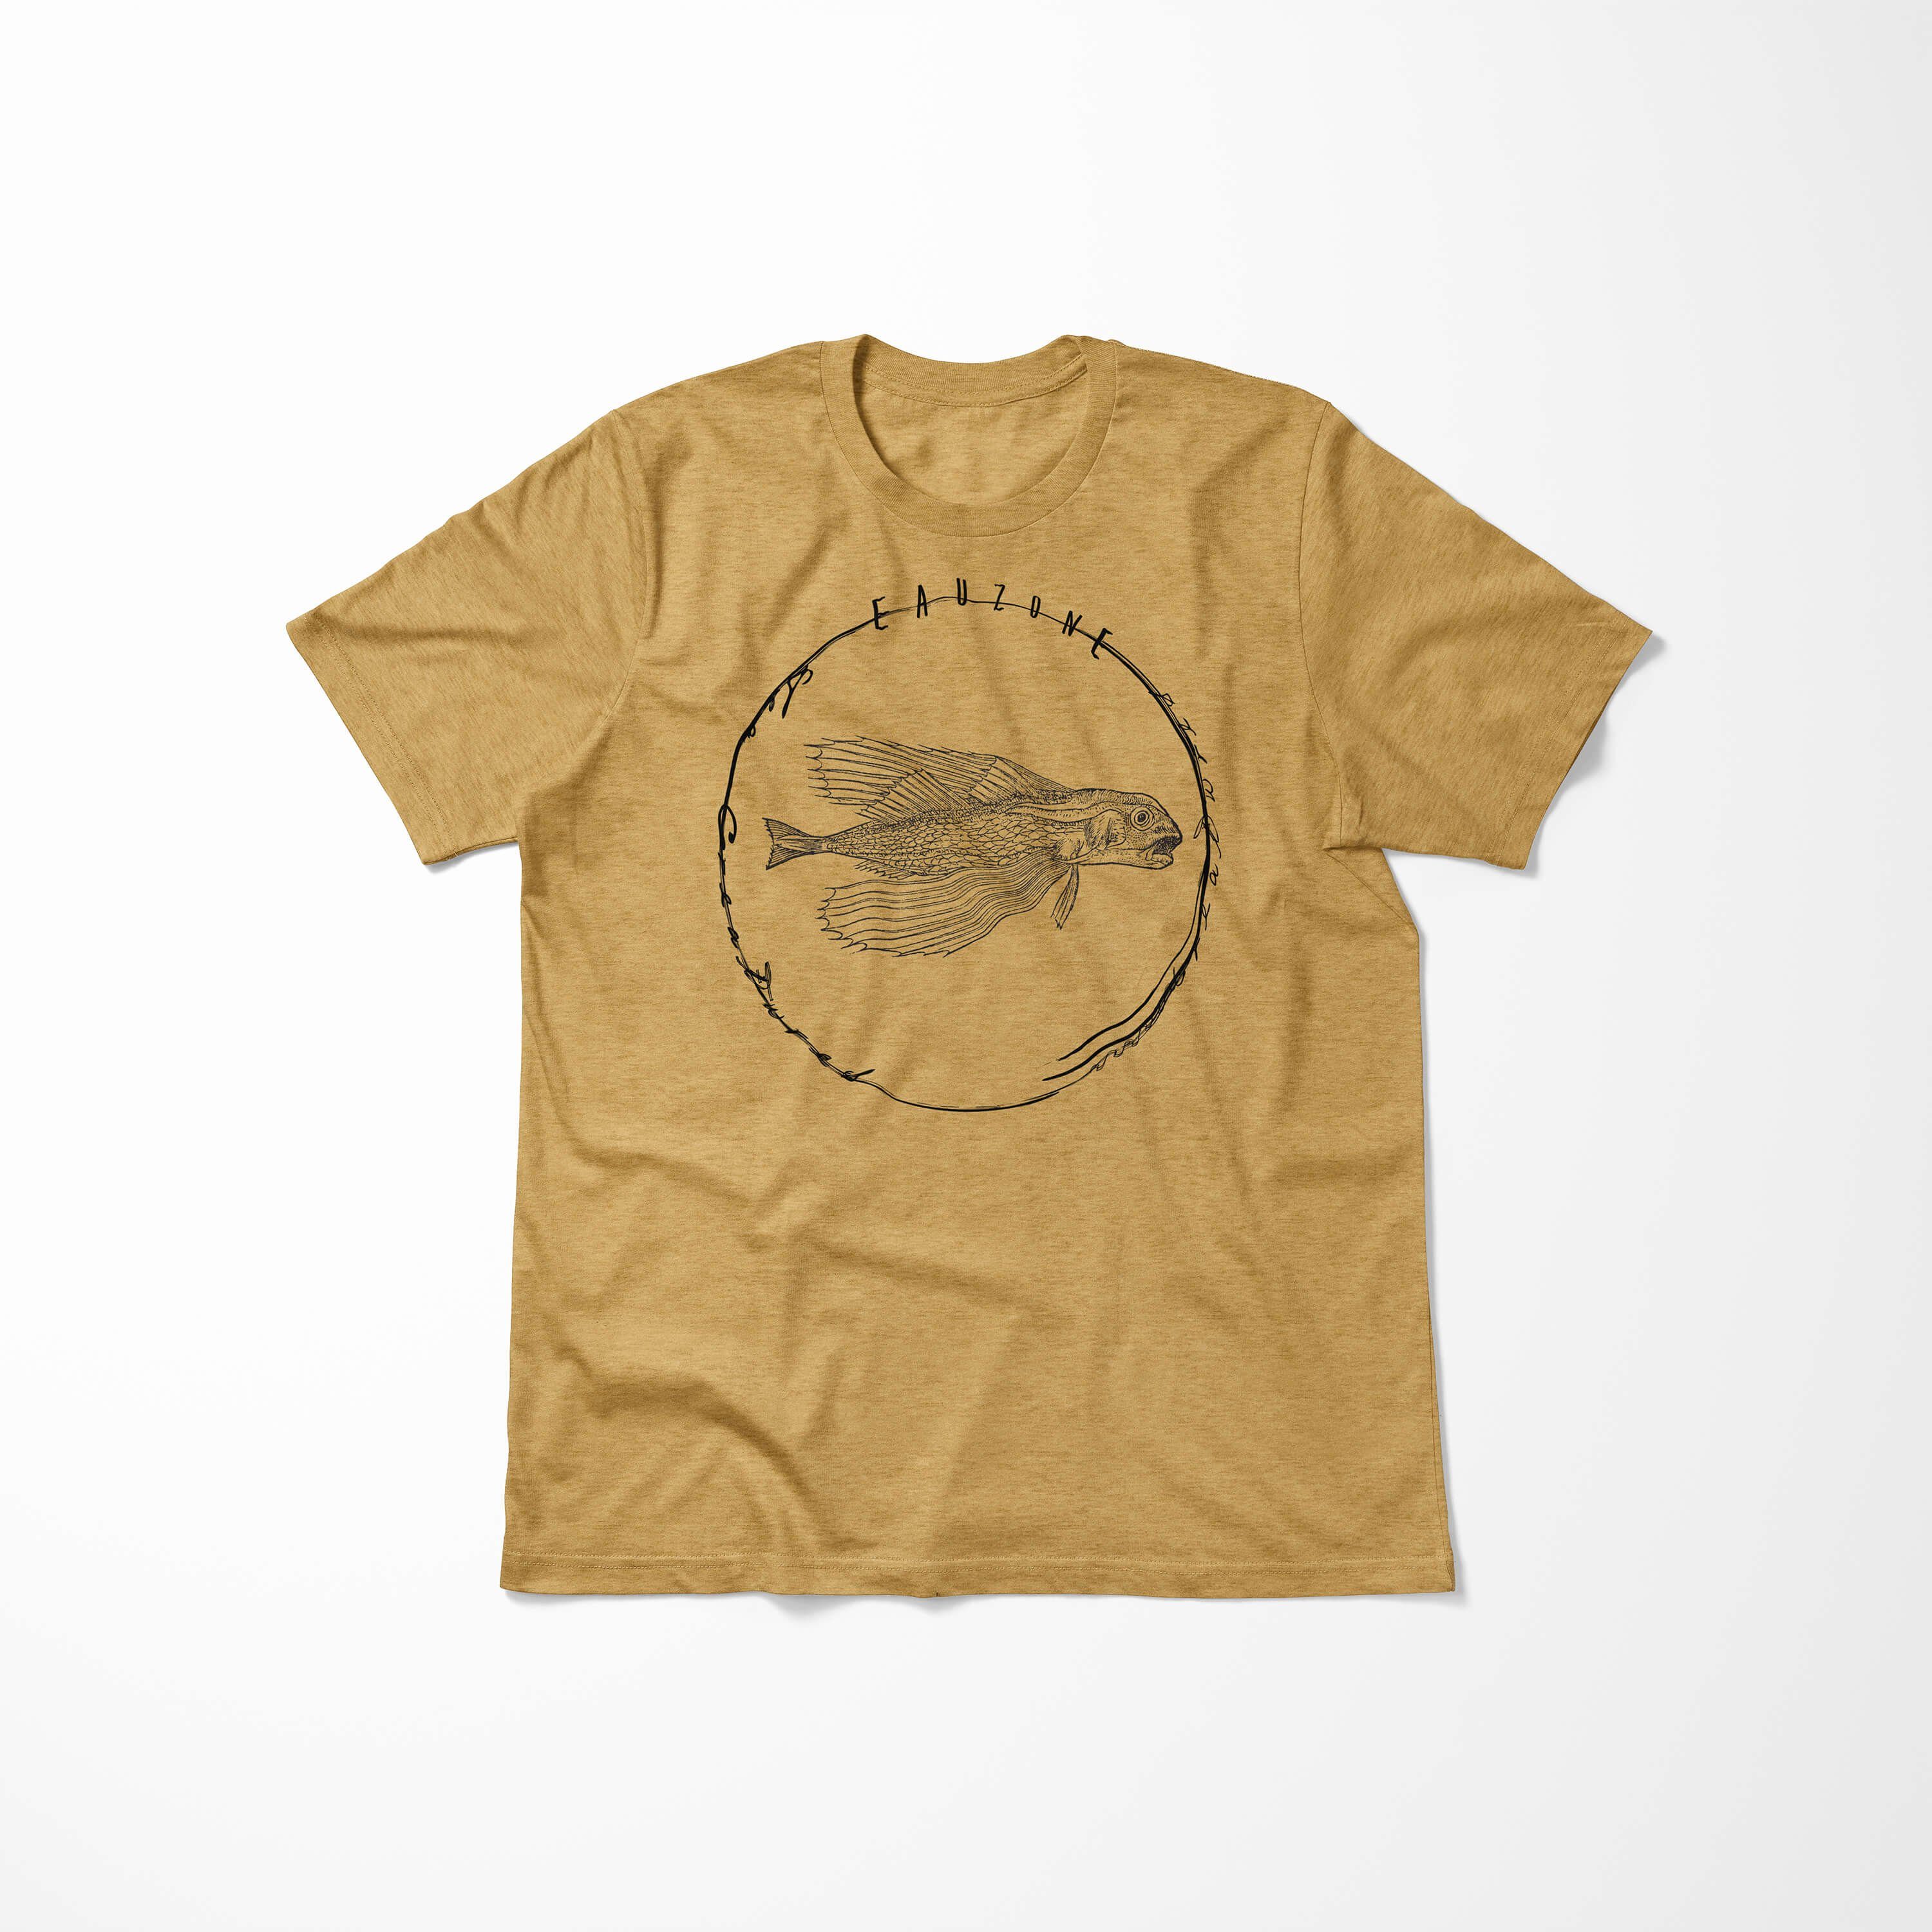 Sea und Schnitt Antique T-Shirt Sinus Tiefsee Fische 061 Serie: / T-Shirt Art Creatures, - Struktur sportlicher Sea Gold feine